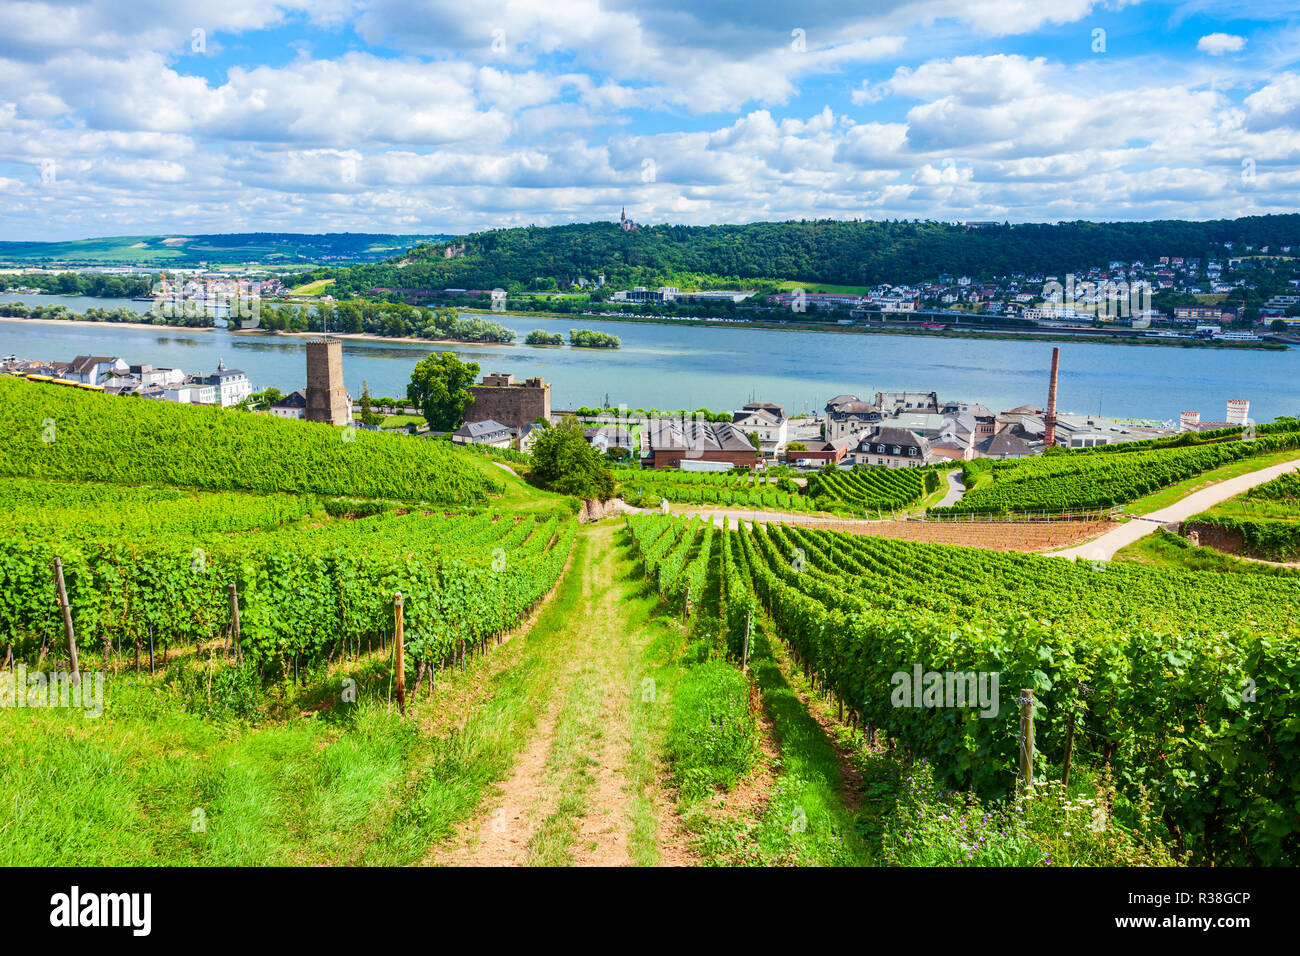 Vignes, Rudesheim am Rhein et Bingen am Rhein ville vue panoramique aérienne dans la vallée du Rhin, Allemagne Banque D'Images